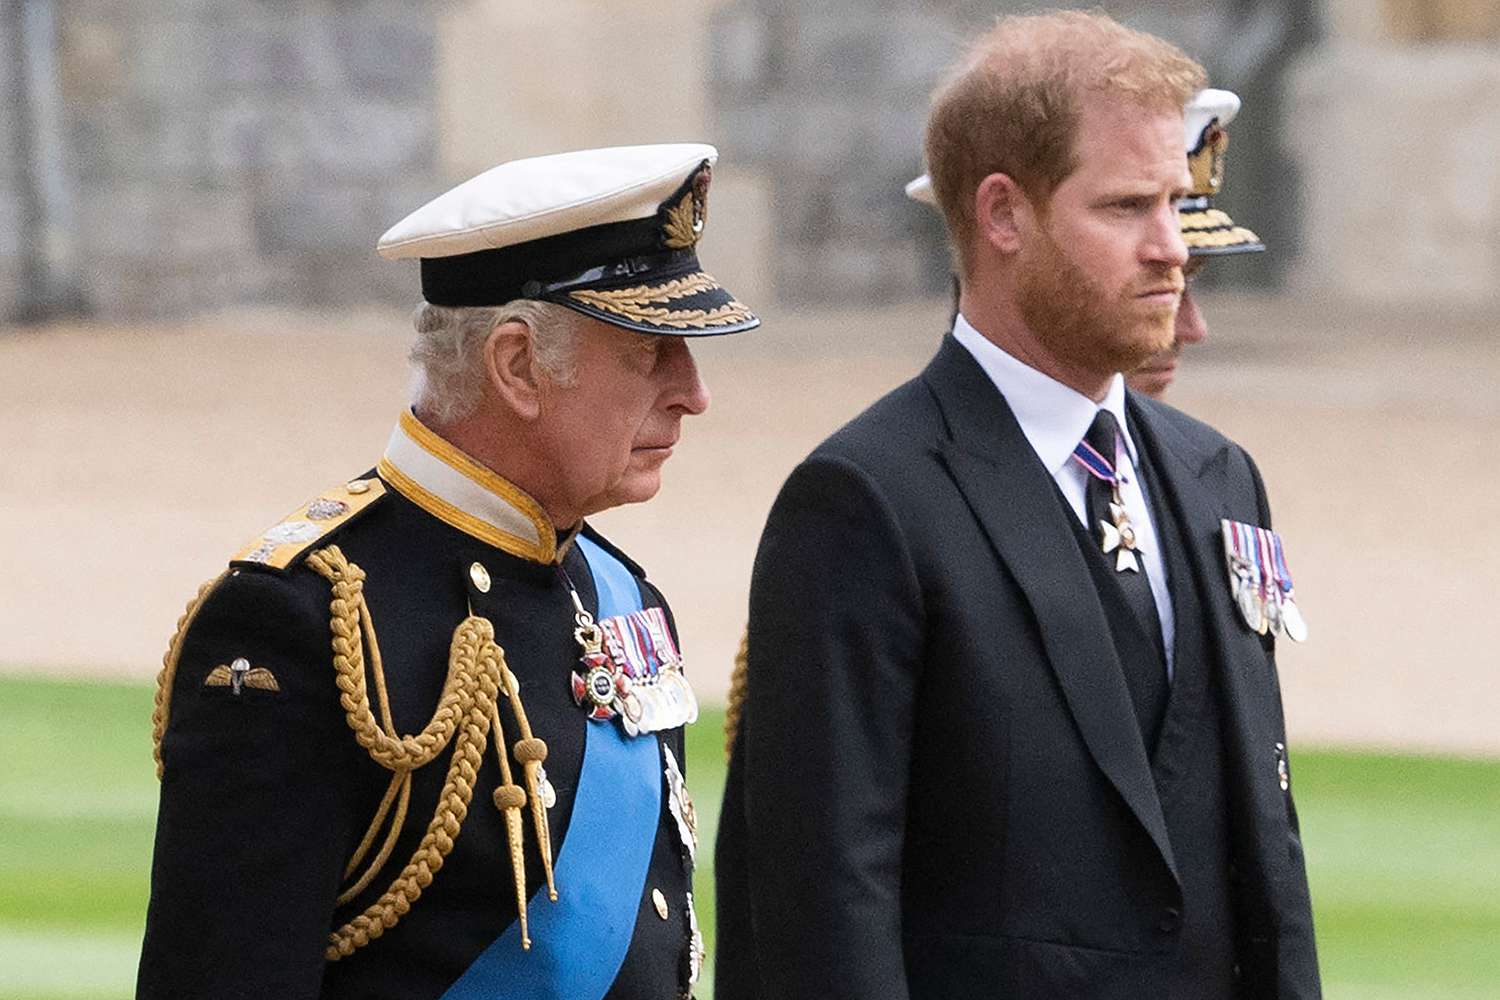 Στέψη Καρόλου: Ο πρίγκιπας Χάρι θα καθίσει 10 σειρές πίσω από την υπόλοιπη βασιλική οικογένεια